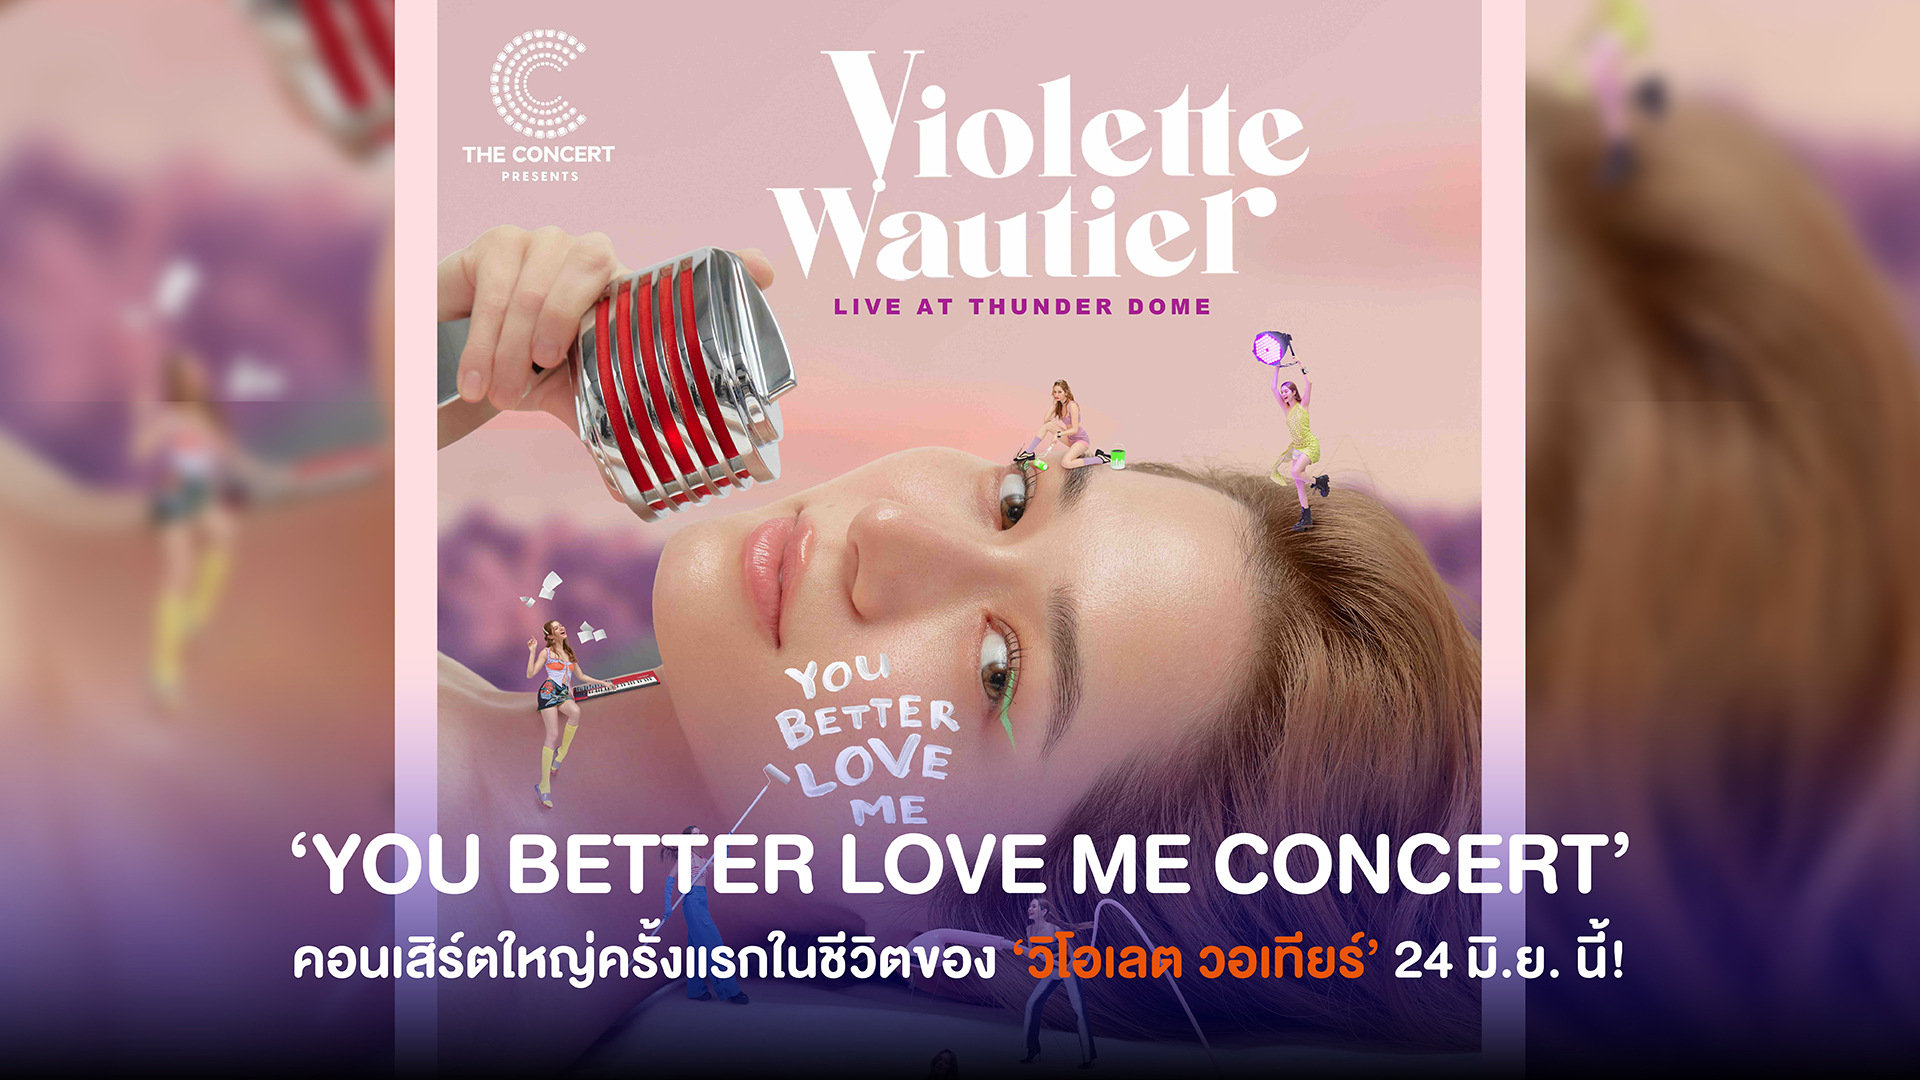 Violette Wautier ประกาศคอนเสิร์ตใหญ่ครั้งแรกในชีวิต ‘YOU BETTER LOVE ME CONCERT’ ซื้อบัตร 6 พ.ค. เจอกันธันเดอร์โดม 24 มิ.ย. นี้!